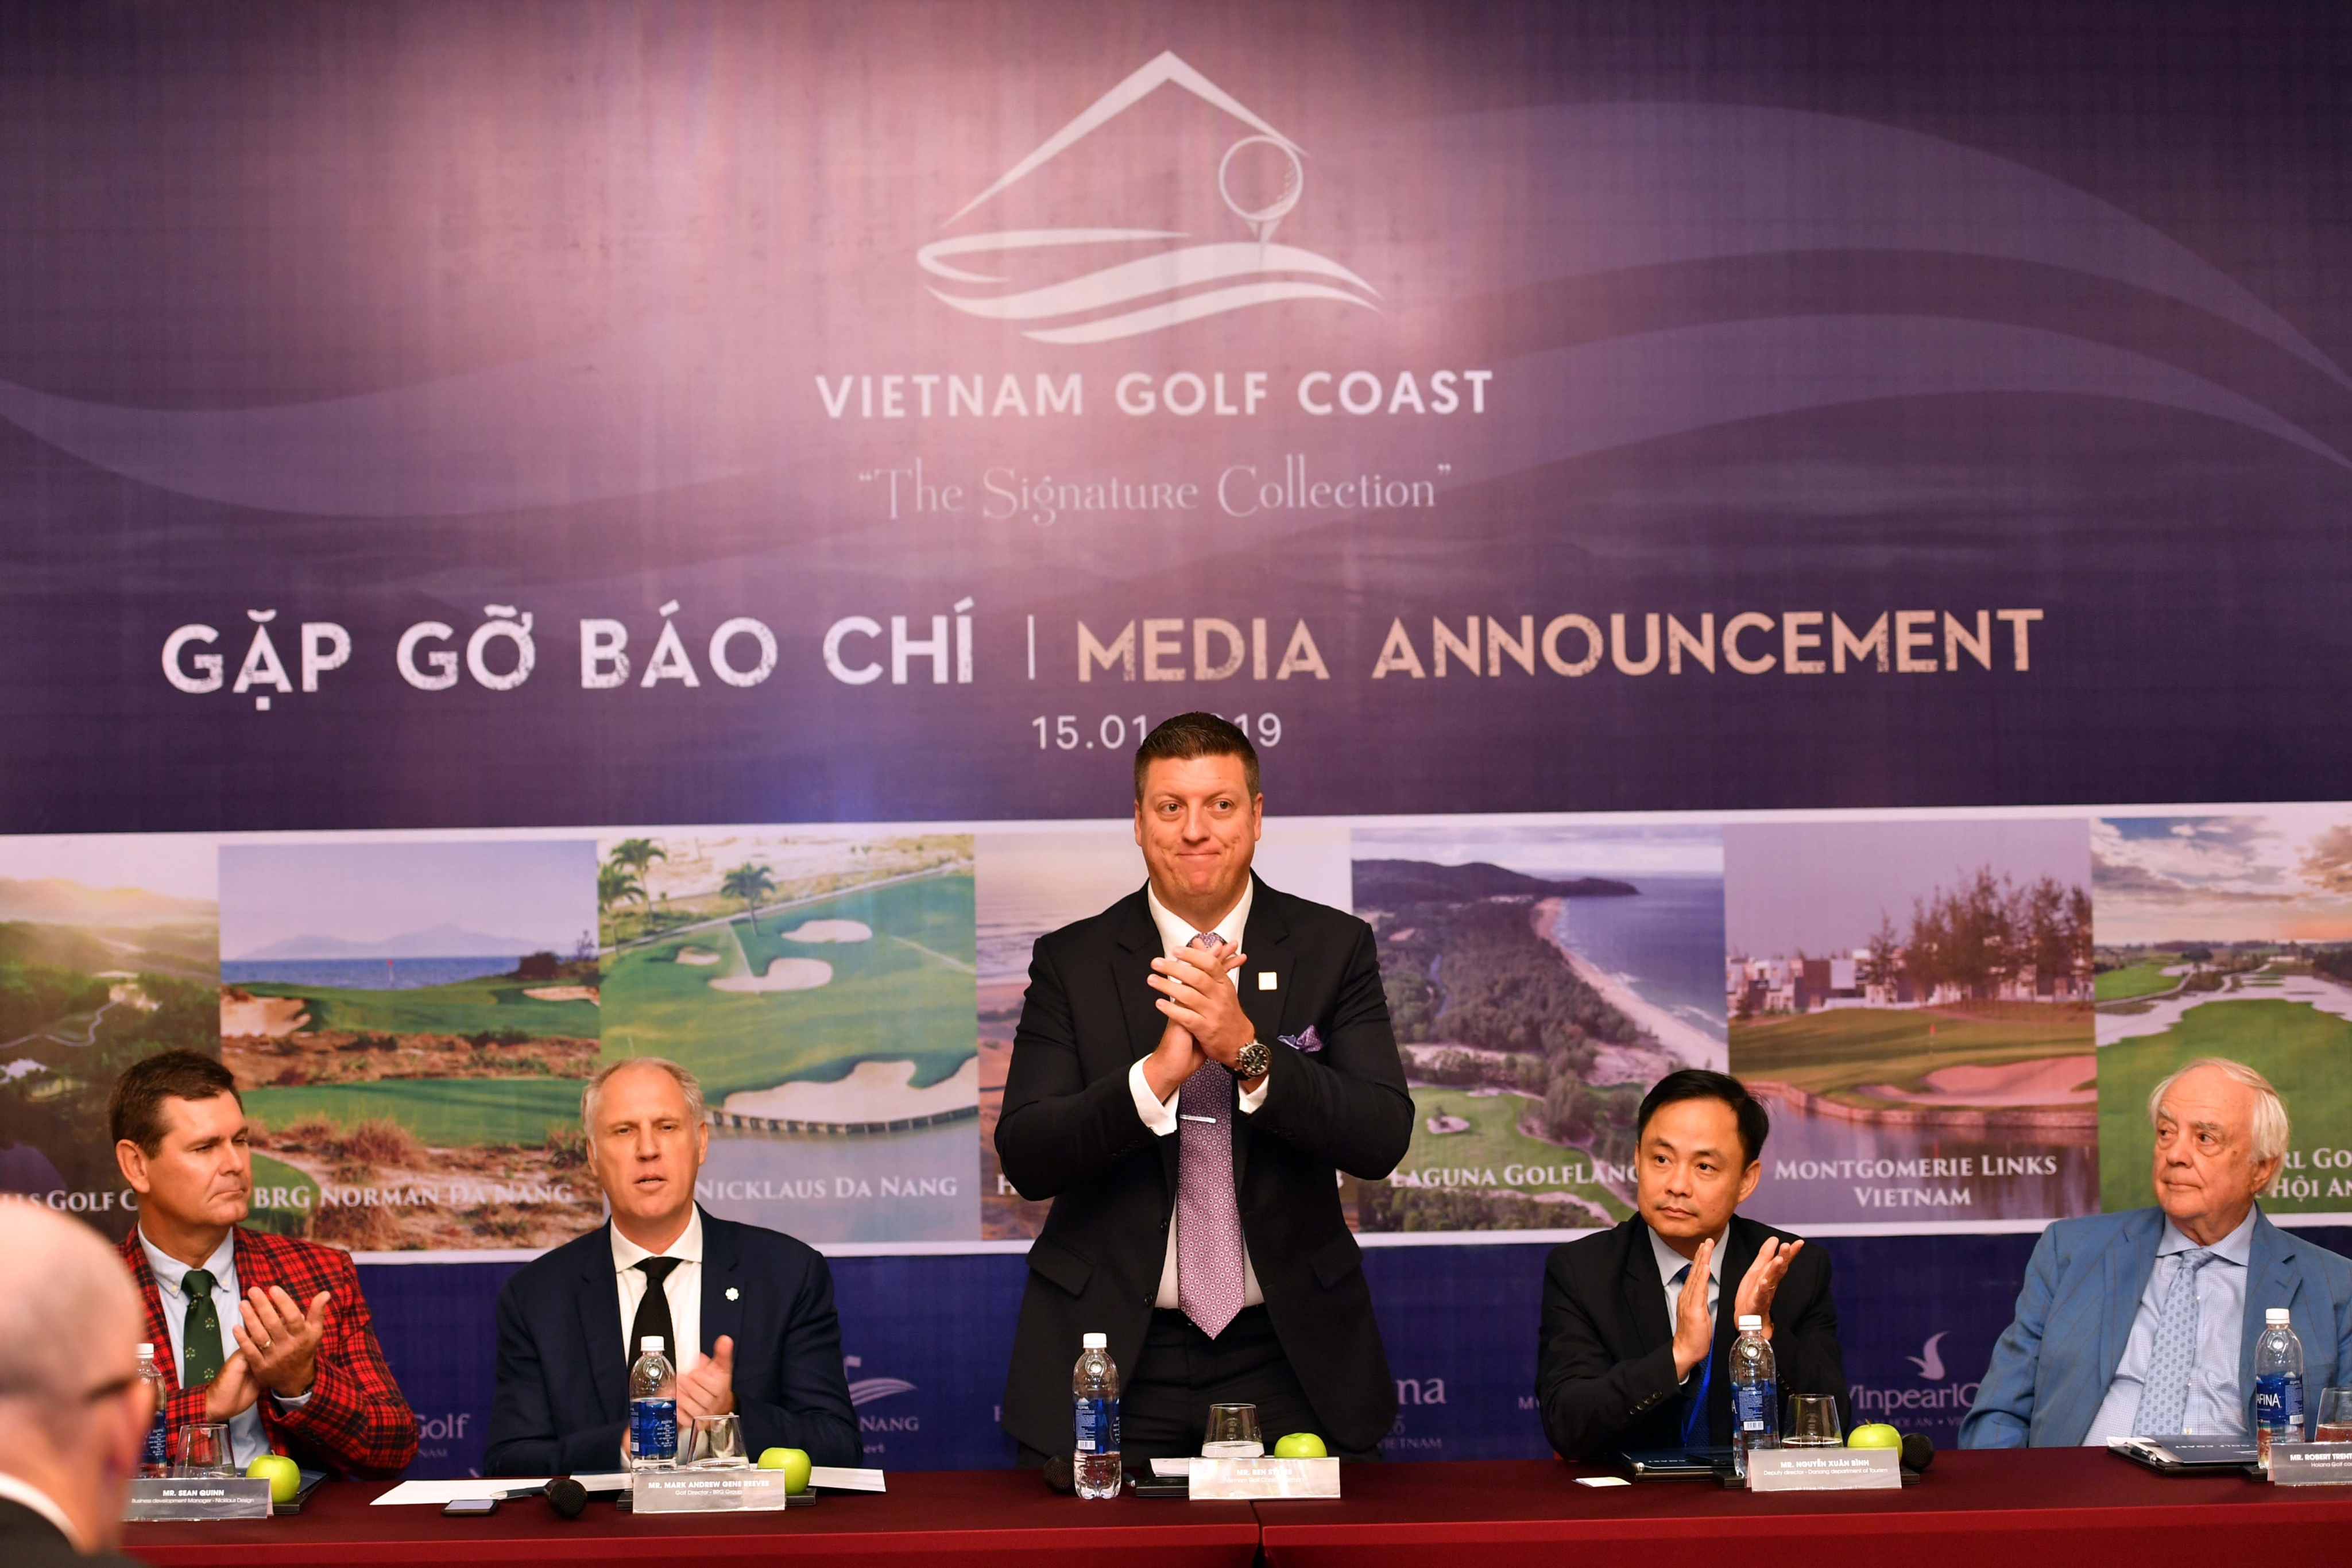 Thành lập liên minh Vietnam Golf Coast: Nơi hội tụ những sân golf xuất sắc nhất khu vực Duyên hải Trung  bộ Việt Nam 